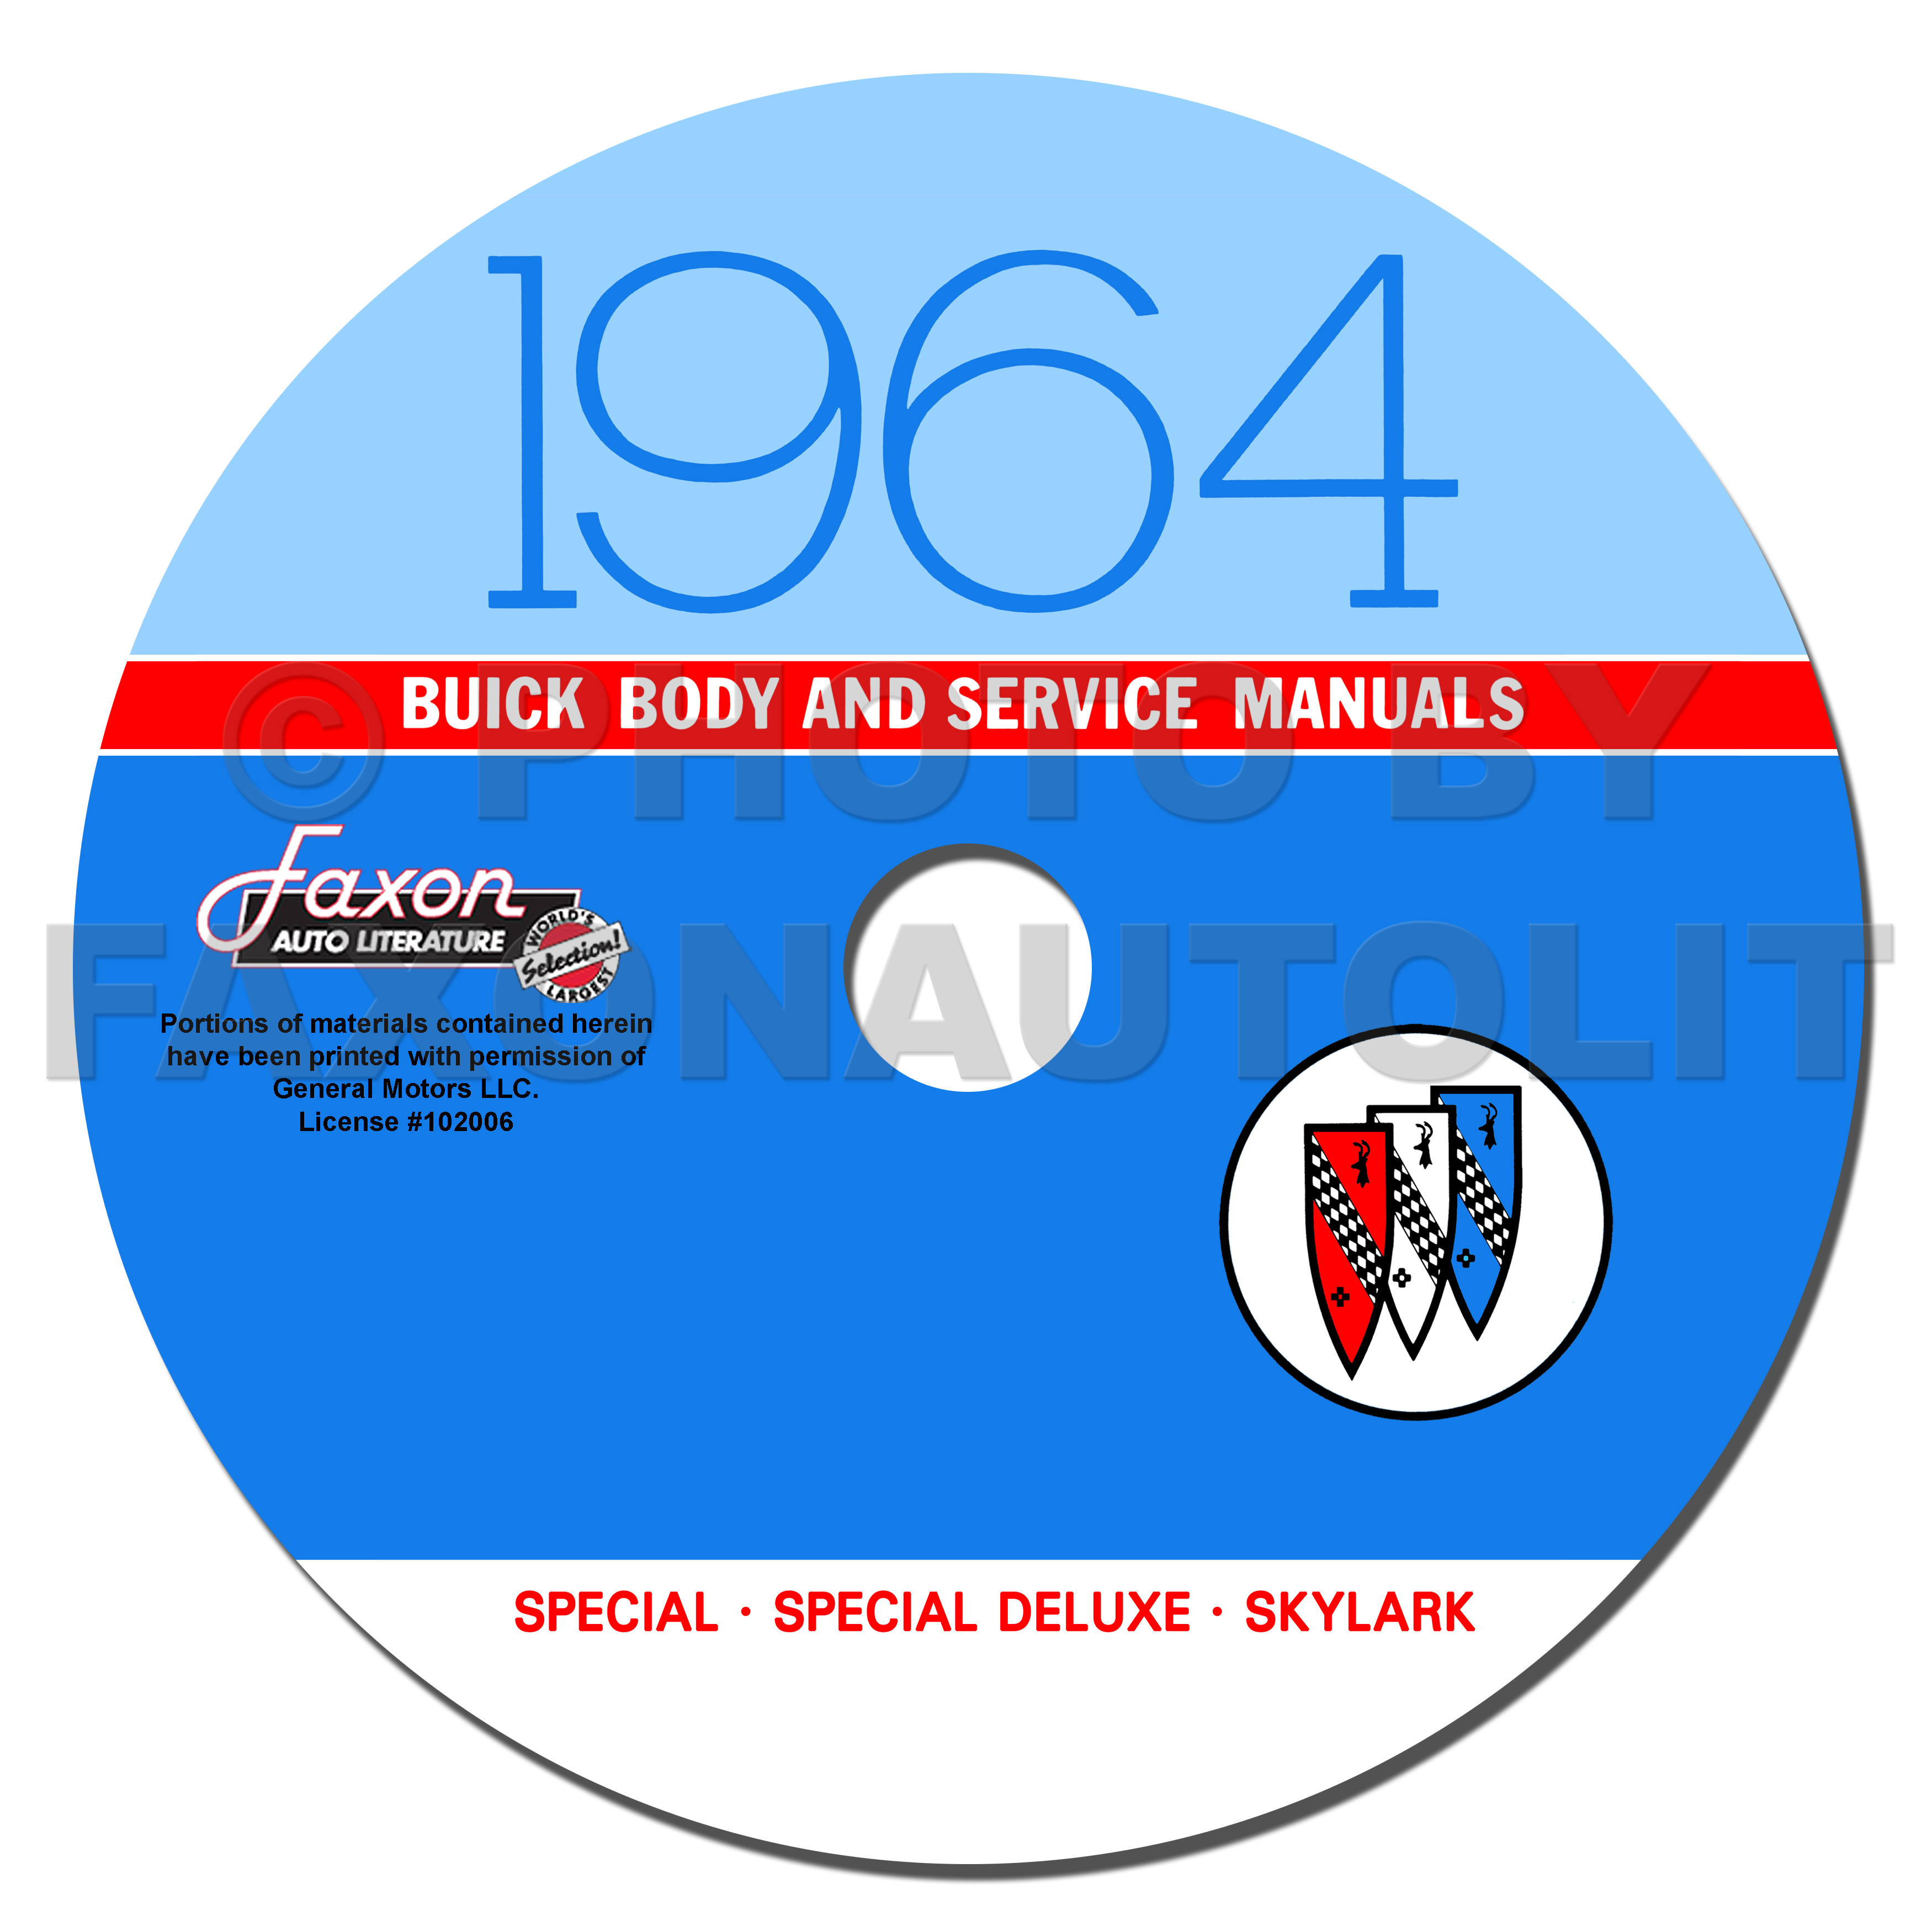 1964 Buick CD-ROM Shop Manual & Body Manual